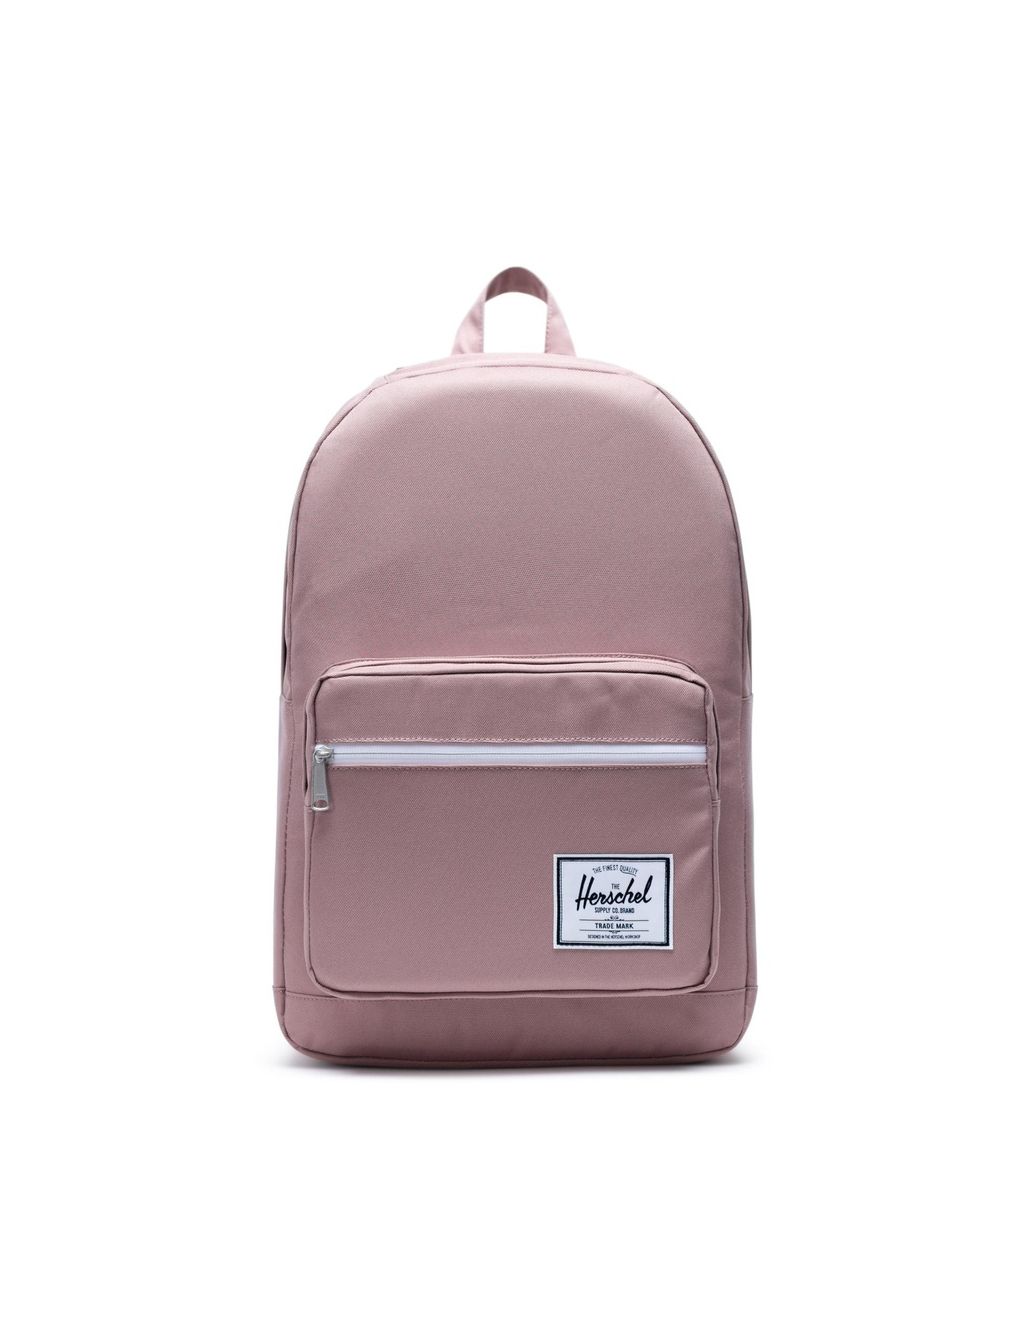 Рюкзак Herschel для женщин, розовый, OS, EUR, 10011-02077-OS